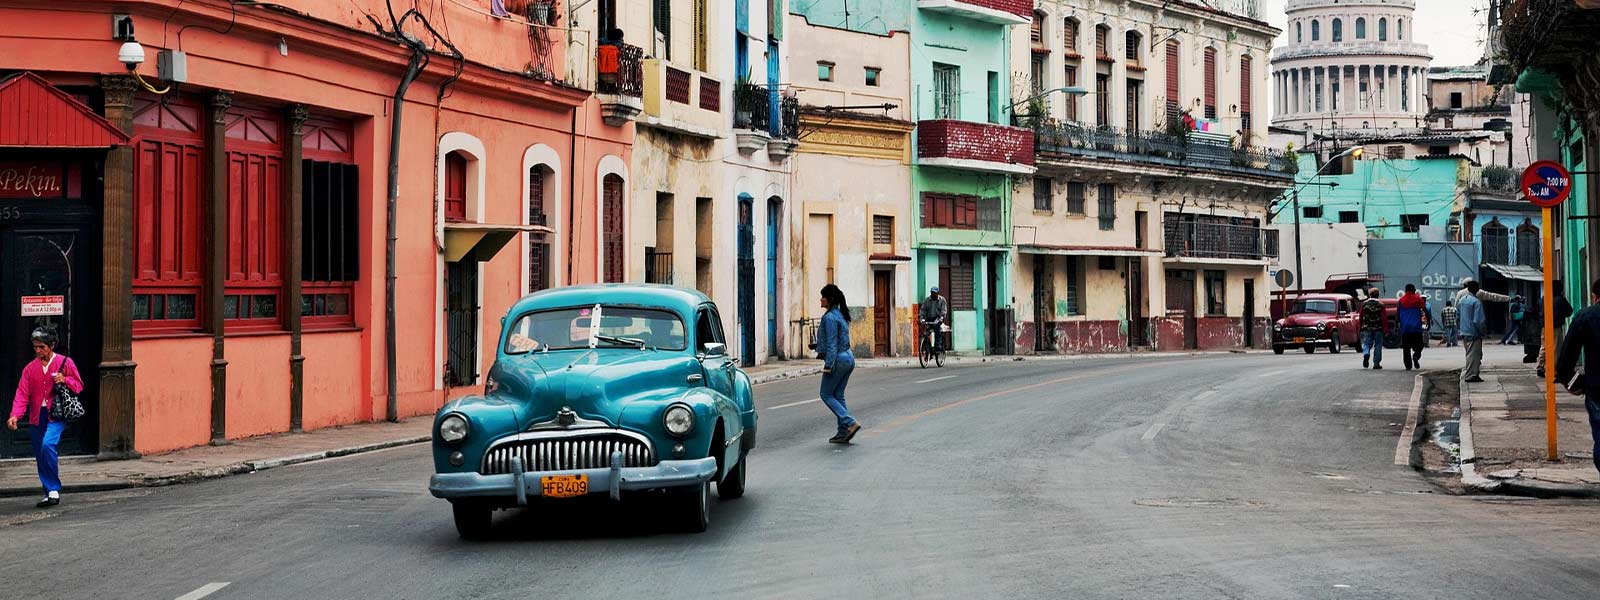 Oude auto's als bezienswaardigheid in Cuba